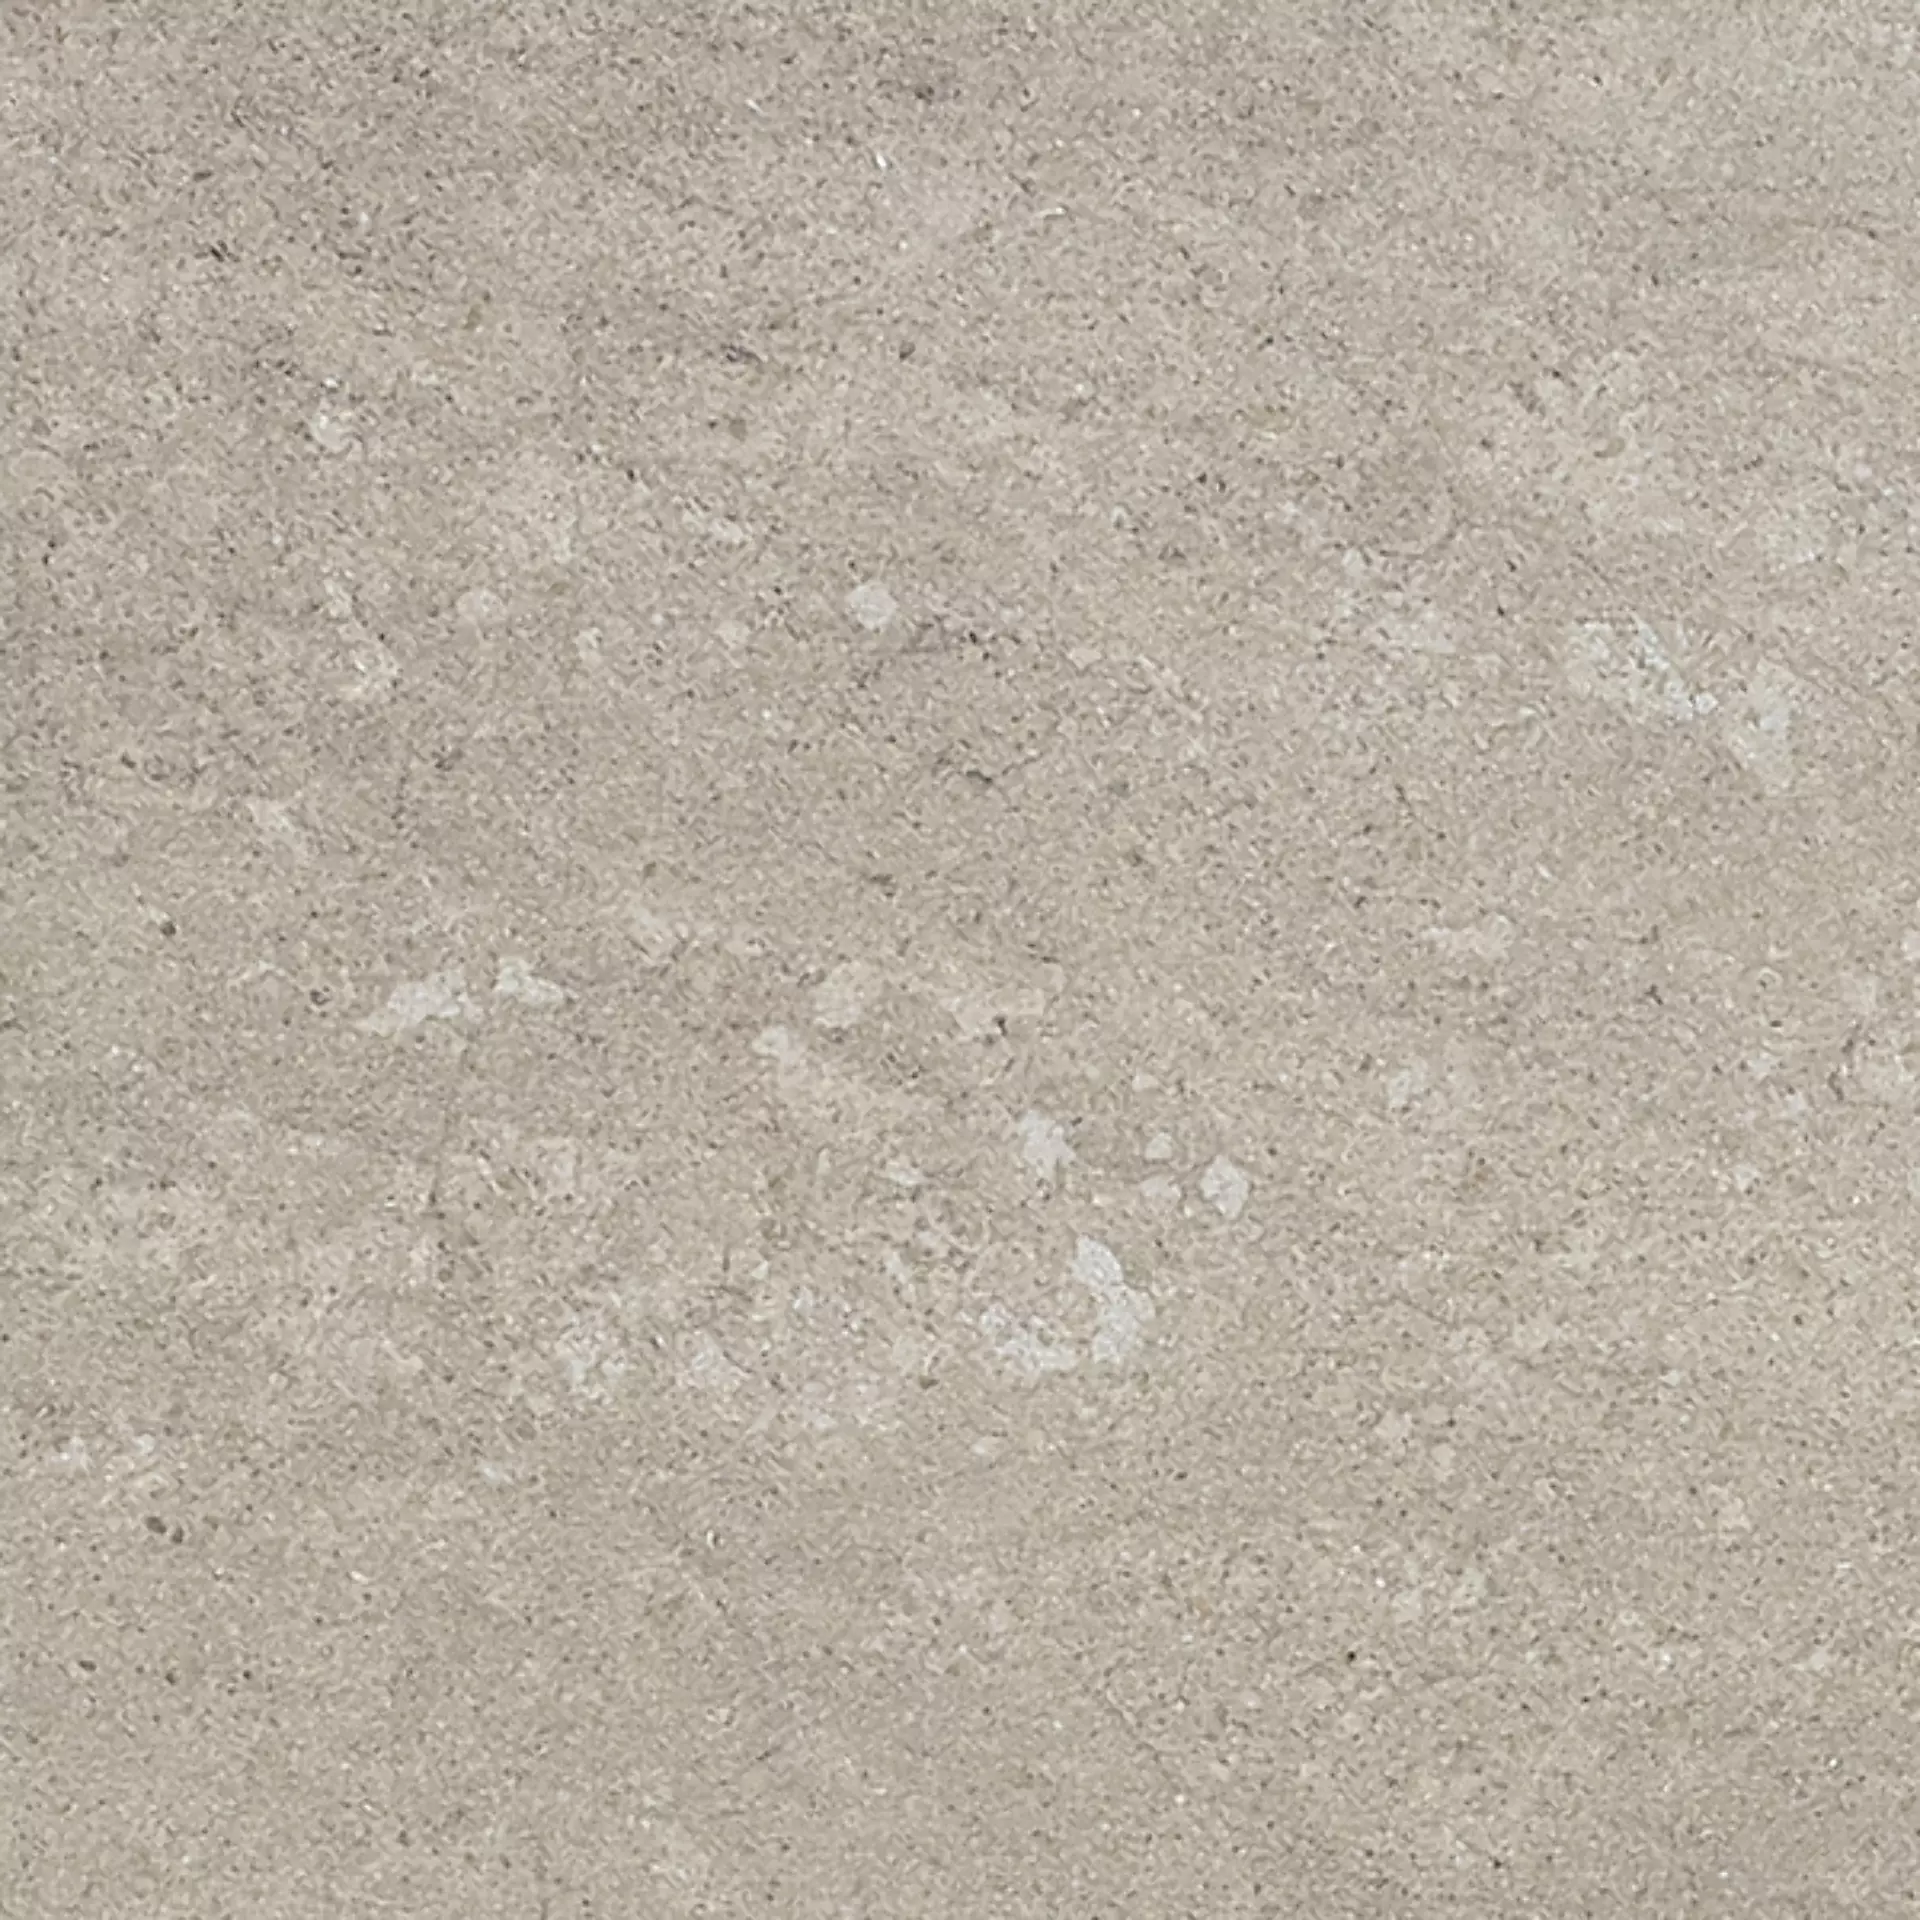 Gigacer Quarry Gravel Stone Bocciardato 12QUAGRASTBOC30 30x30cm 12mm